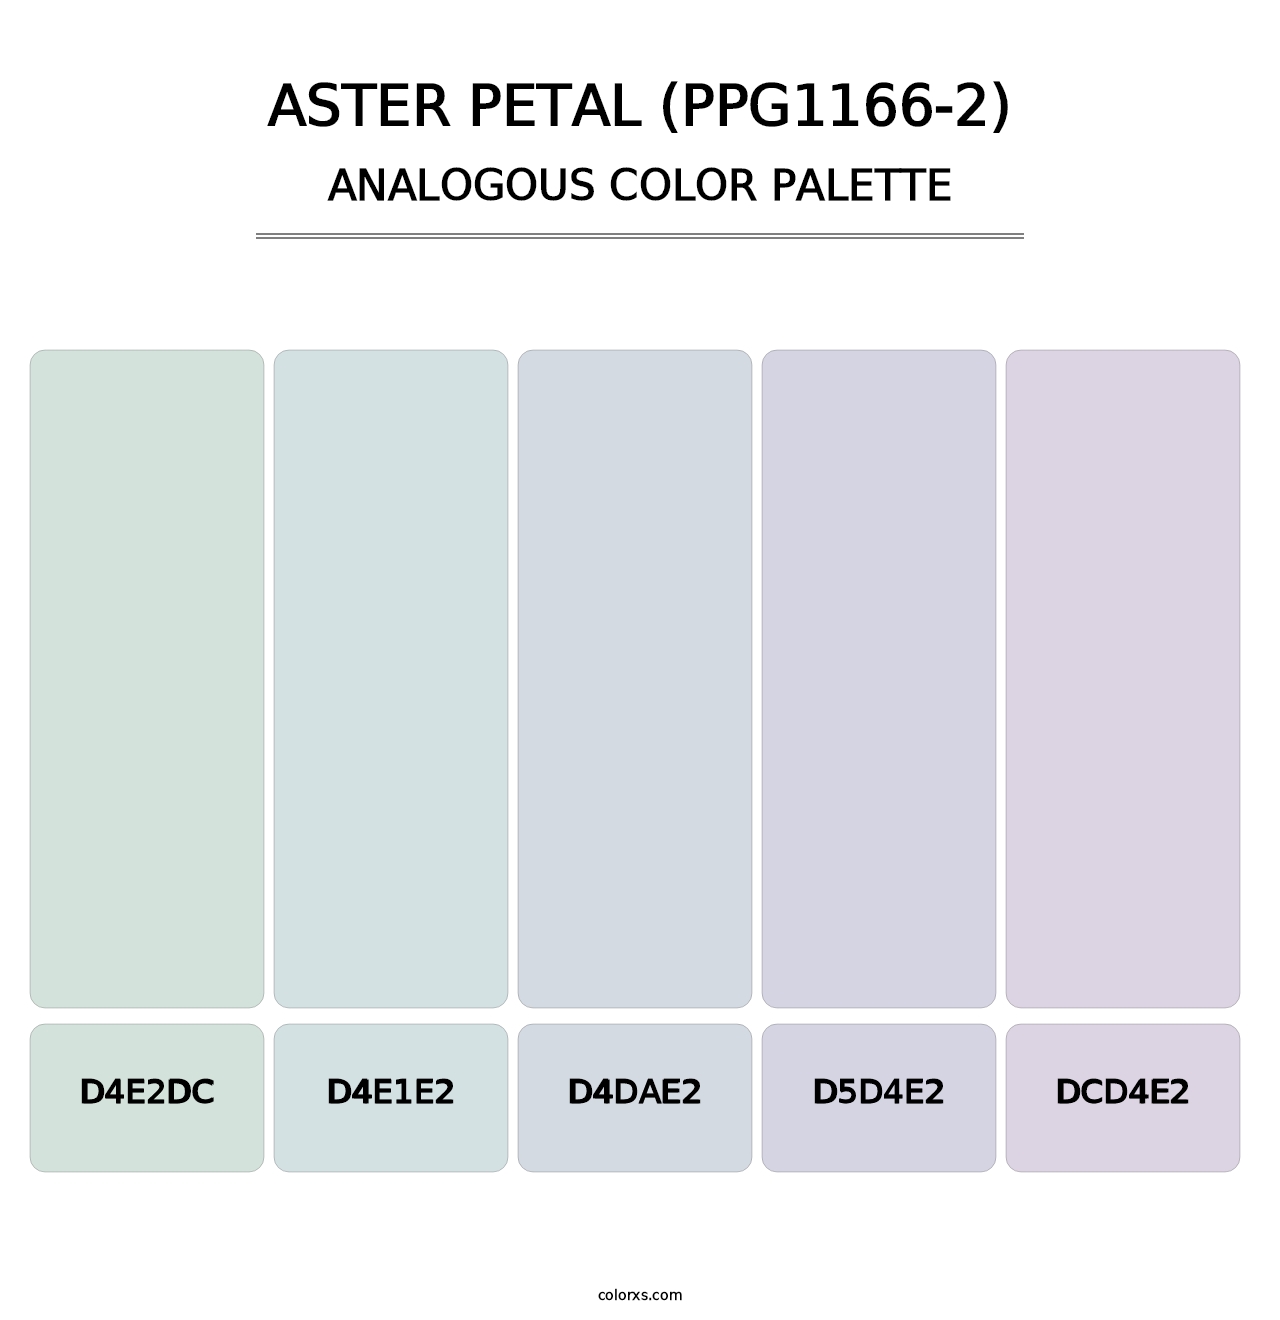 Aster Petal (PPG1166-2) - Analogous Color Palette